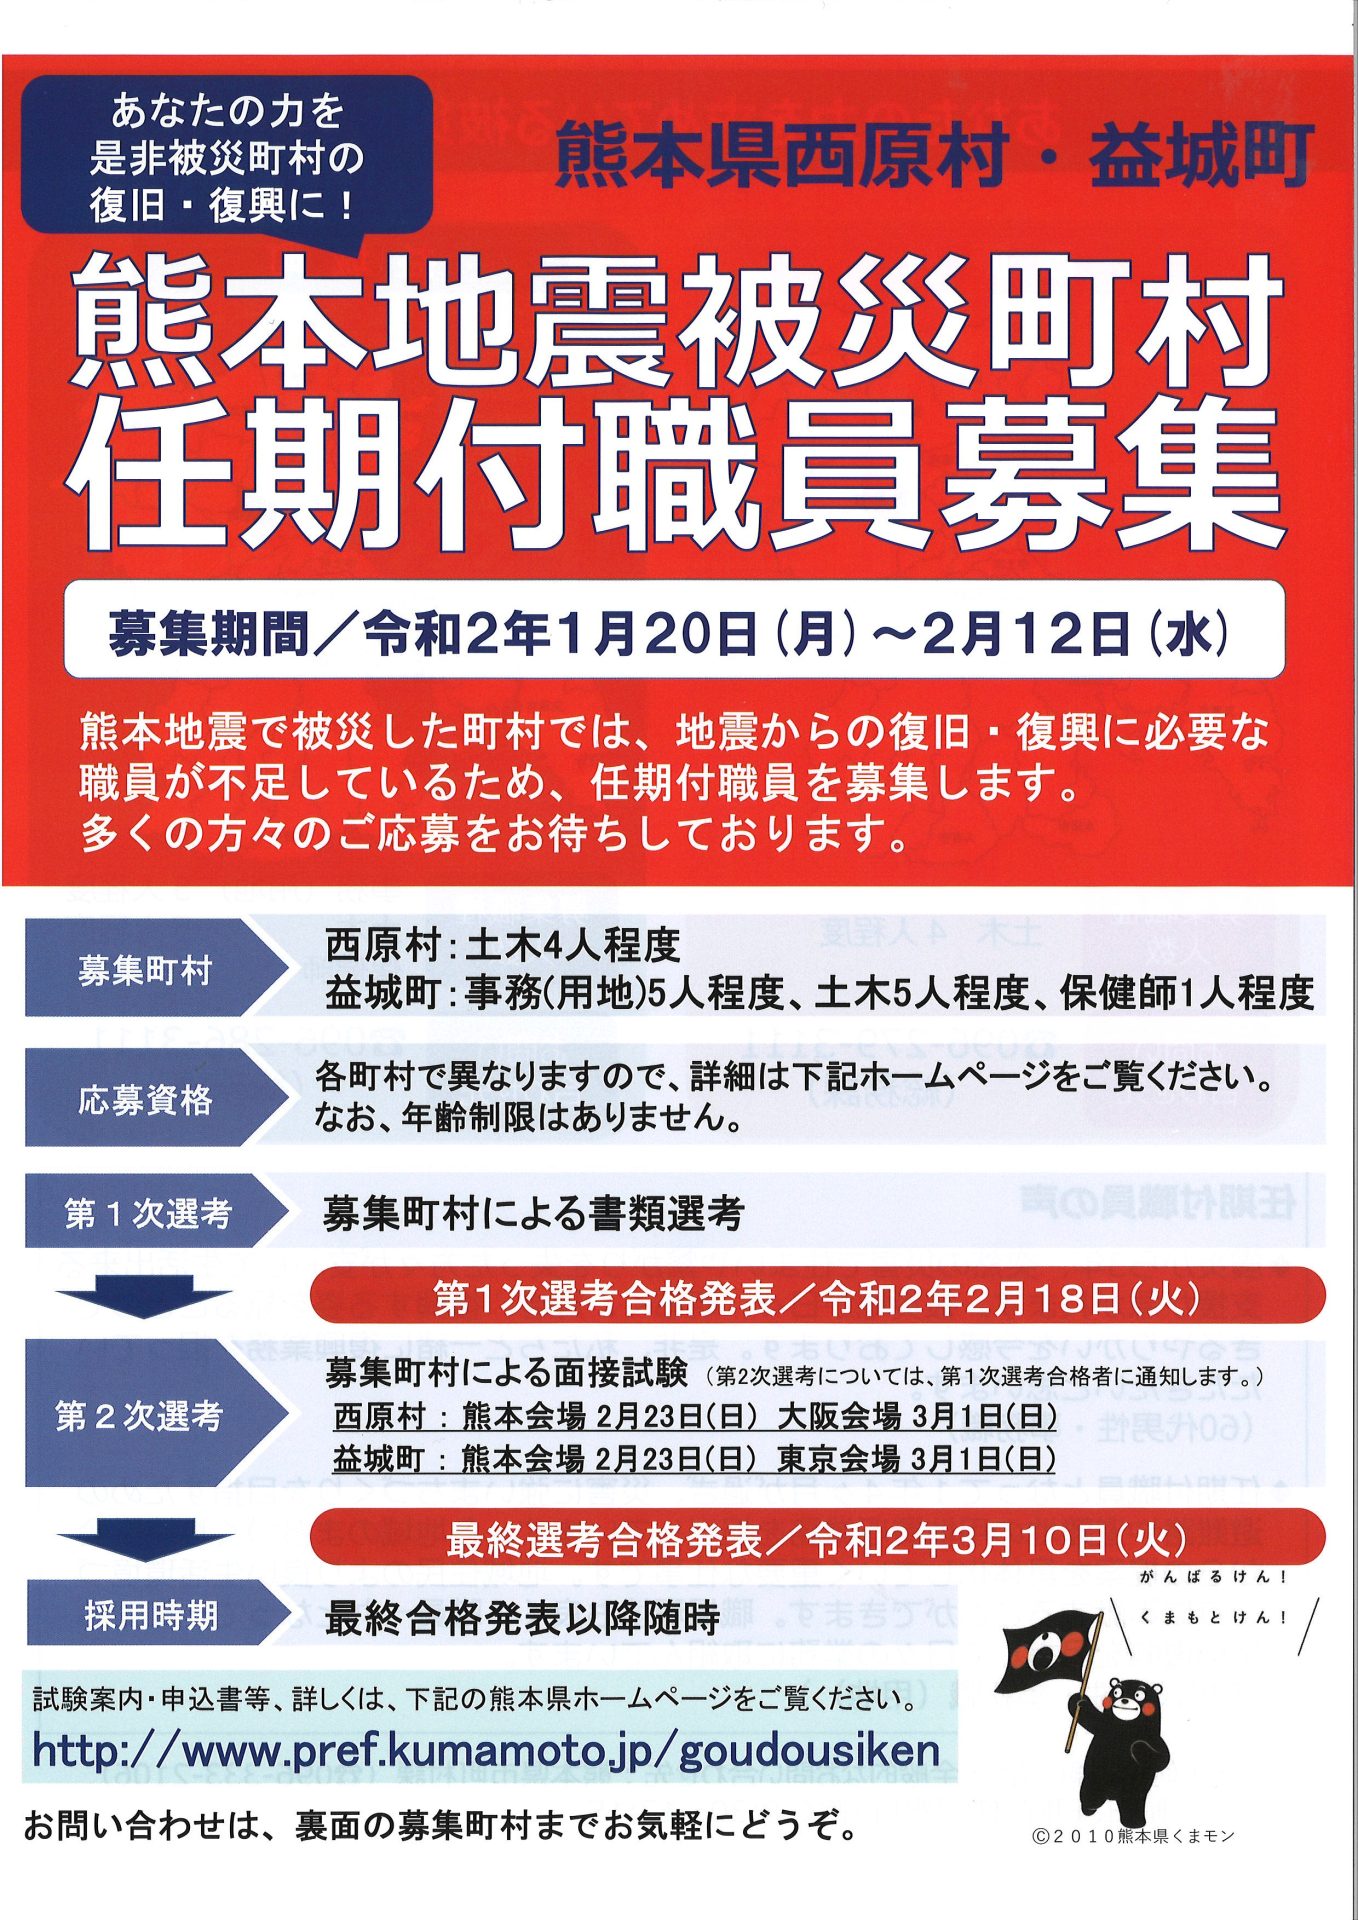 熊本地震被災市町村 任期付職員募集※申込締切2/12 | 地域のトピックス